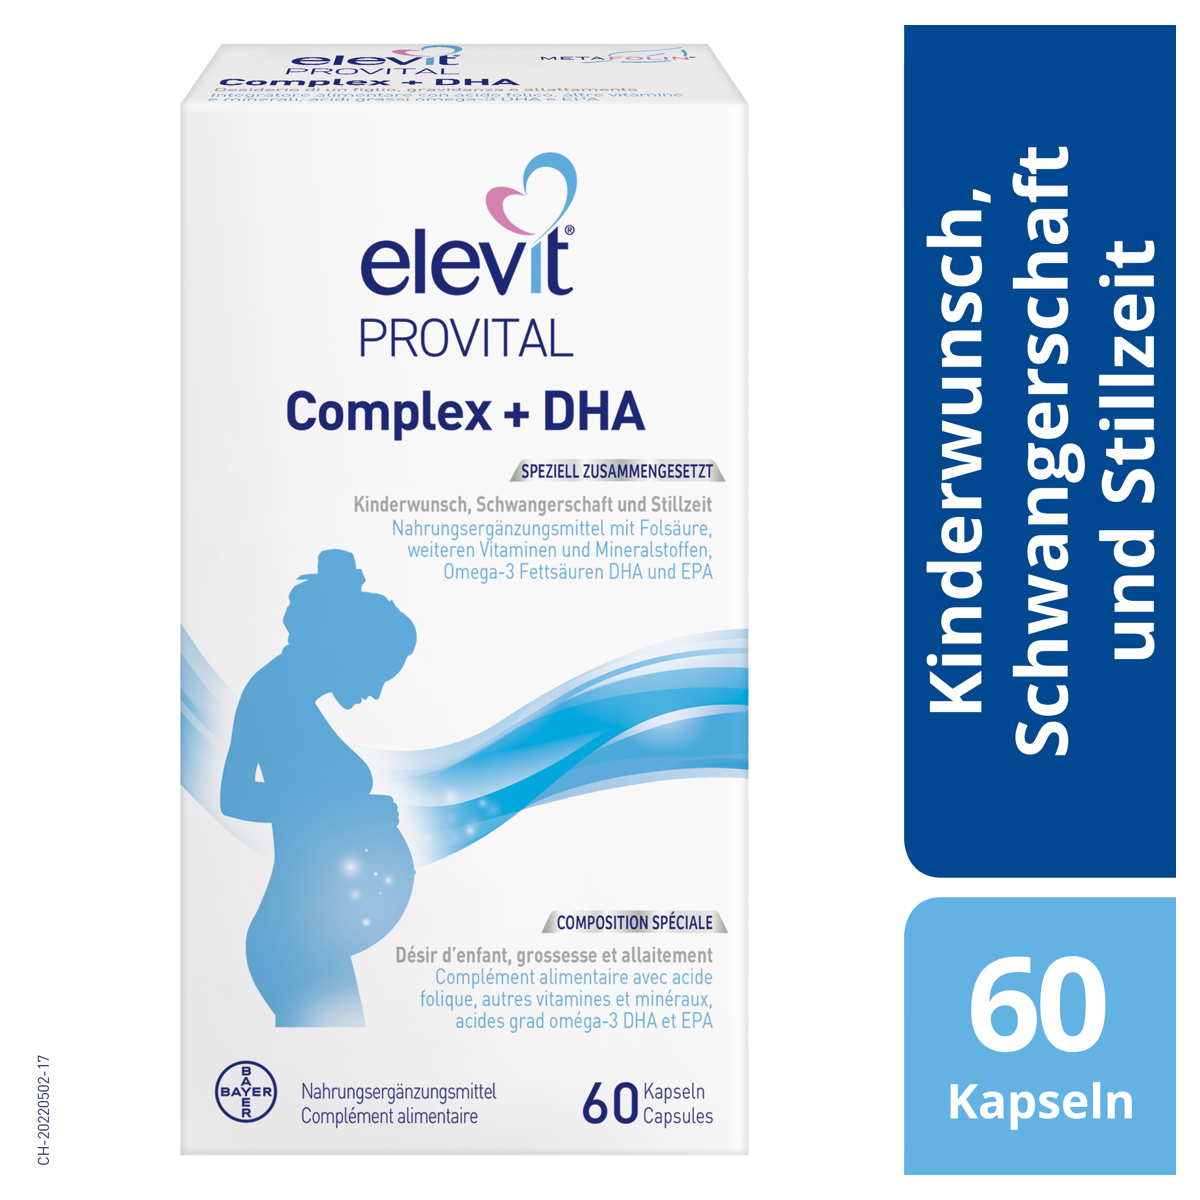 Elevit Provital Complex + DHA Multivitaminpräparat bei Kinderwunsch und für die Schwangerschaft und Stillzeit